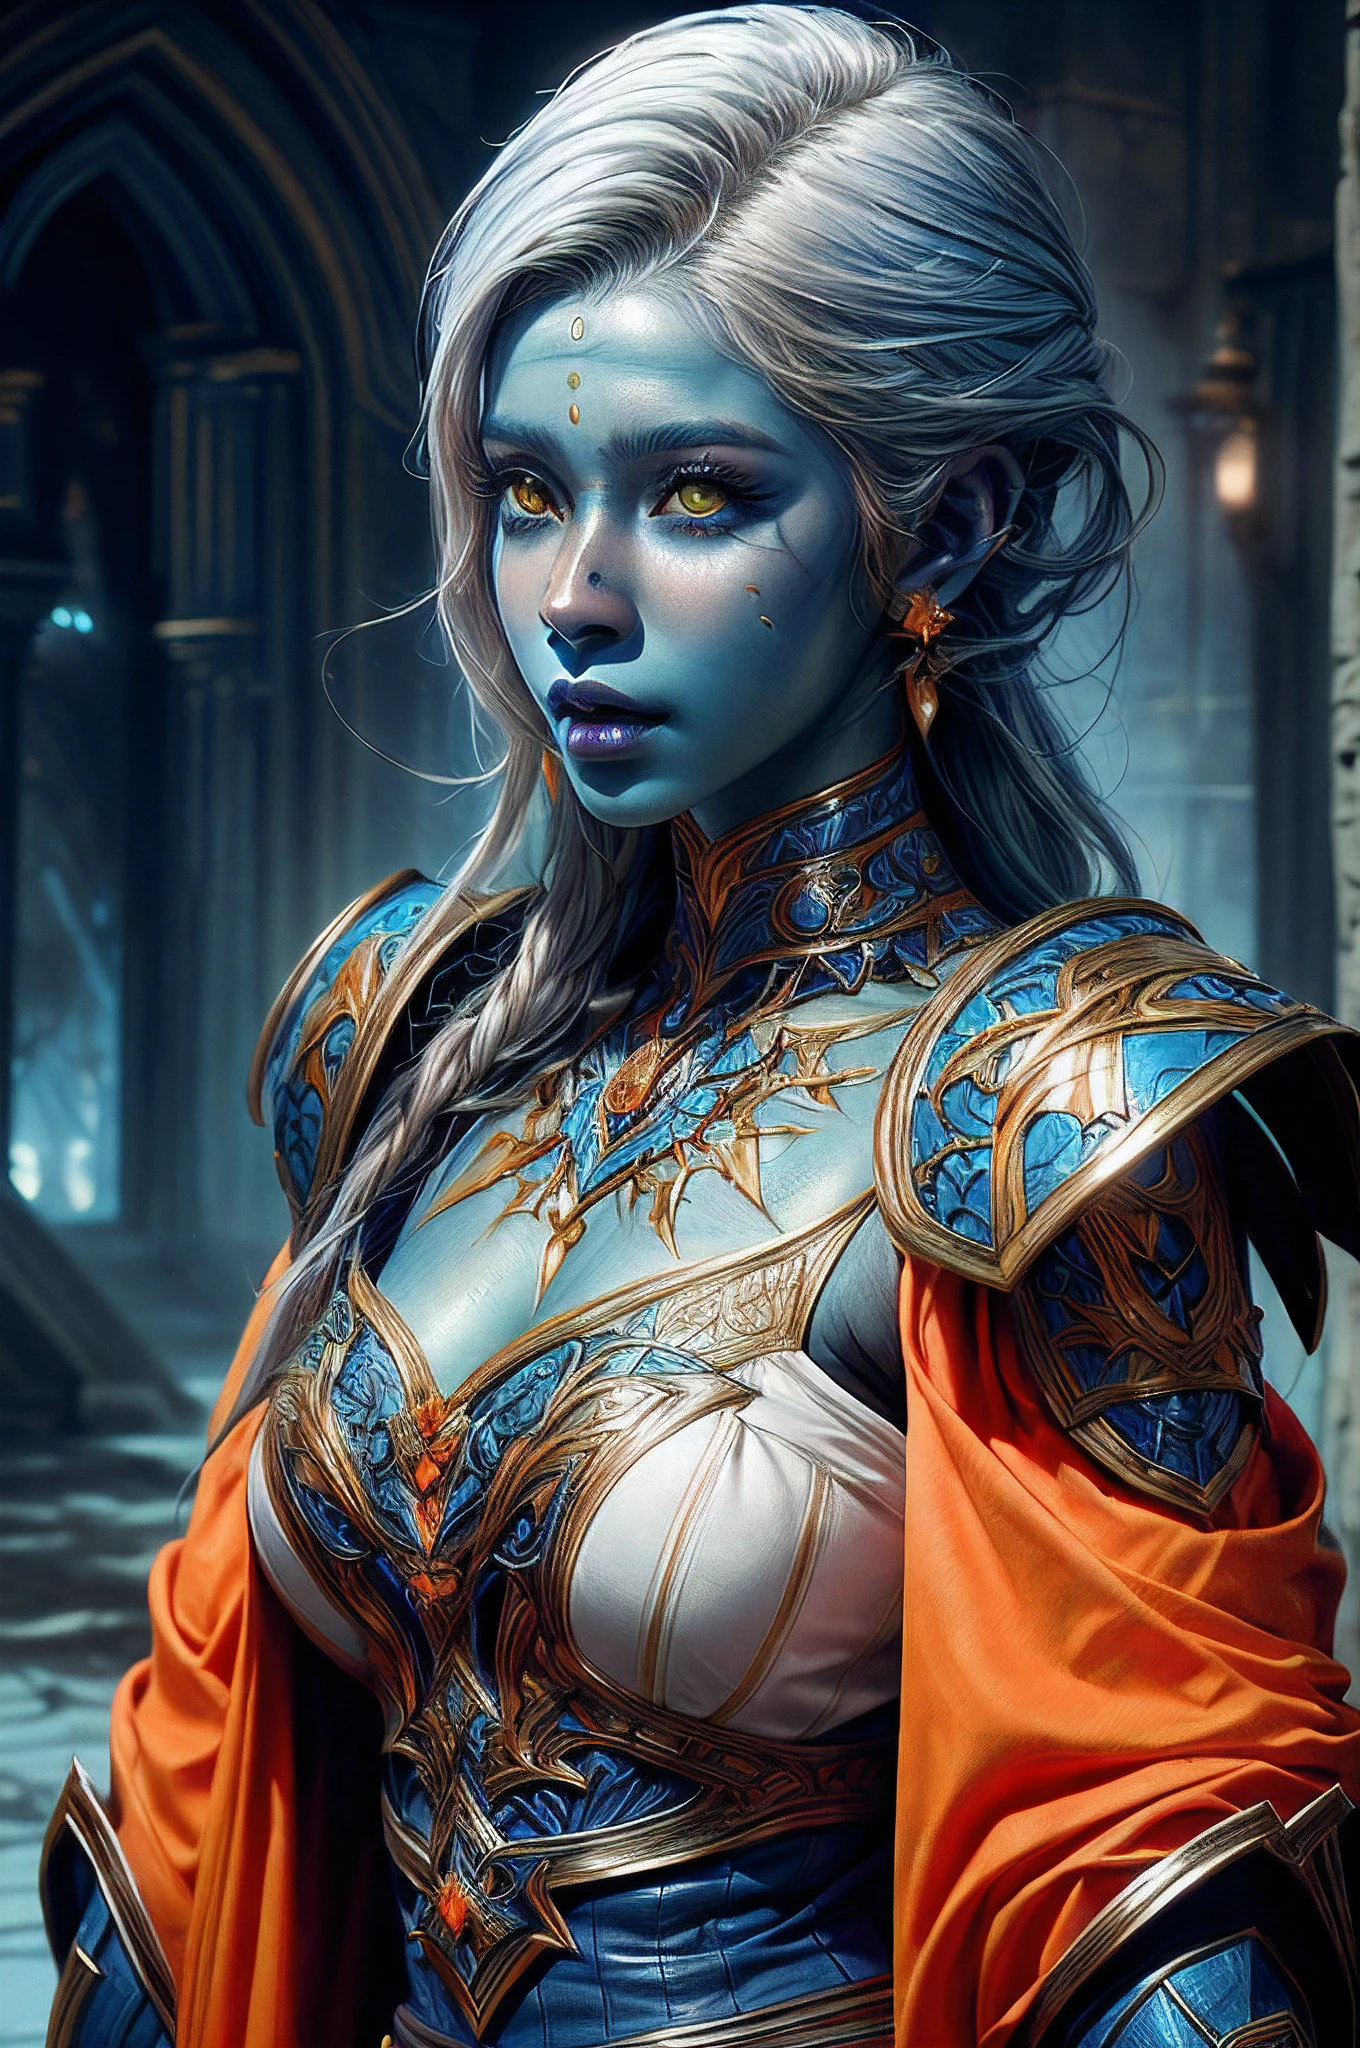 판타지 아트, DND 아트, RPG 아트, drkfntasy 와이드 샷, (걸작: 1.4) 초상화, 강렬한 디테일, 매우 상세한, 사실적인, 최고의 품질, 고등어, 초상화 a vedalken female (판타지 아트, 걸작, 최고의 품질: 1.3) (blue colored 피부: 1.3), 강렬한 디테일 facial details, 절묘한 아름다움, (판타지 아트, 걸작, 최고의 품질)성직자, (blue colored 피부: 1.3) 1인블루_피부, (하얀색 hair: 1.3), 긴 머리, 강렬한 녹색 눈, 판타지 아트, 걸작, 최고의 품질) 불칼 붉은 불을 무장하다, 무겁게 입고 (하얀색: 1.3) 하프 플레이트 메일 아머 LnF 착용 하이힐 레이스 부츠, 입고(주황색 :1.3) 망토, 빛나는 신성한 상징을 입고 빛나는 룬_노란색, 판타지 사원 배경 내, 반사광, 높은 세부 사항, 최고의 품질, 16,000, [매우 상세한], 걸작, 최고의 품질, (매우 상세한), 확대, 울트라 와이드 샷, 사실적인, 날것의, 판타지 아트, DND 아트, 판타지 아트, 현실적인 예술